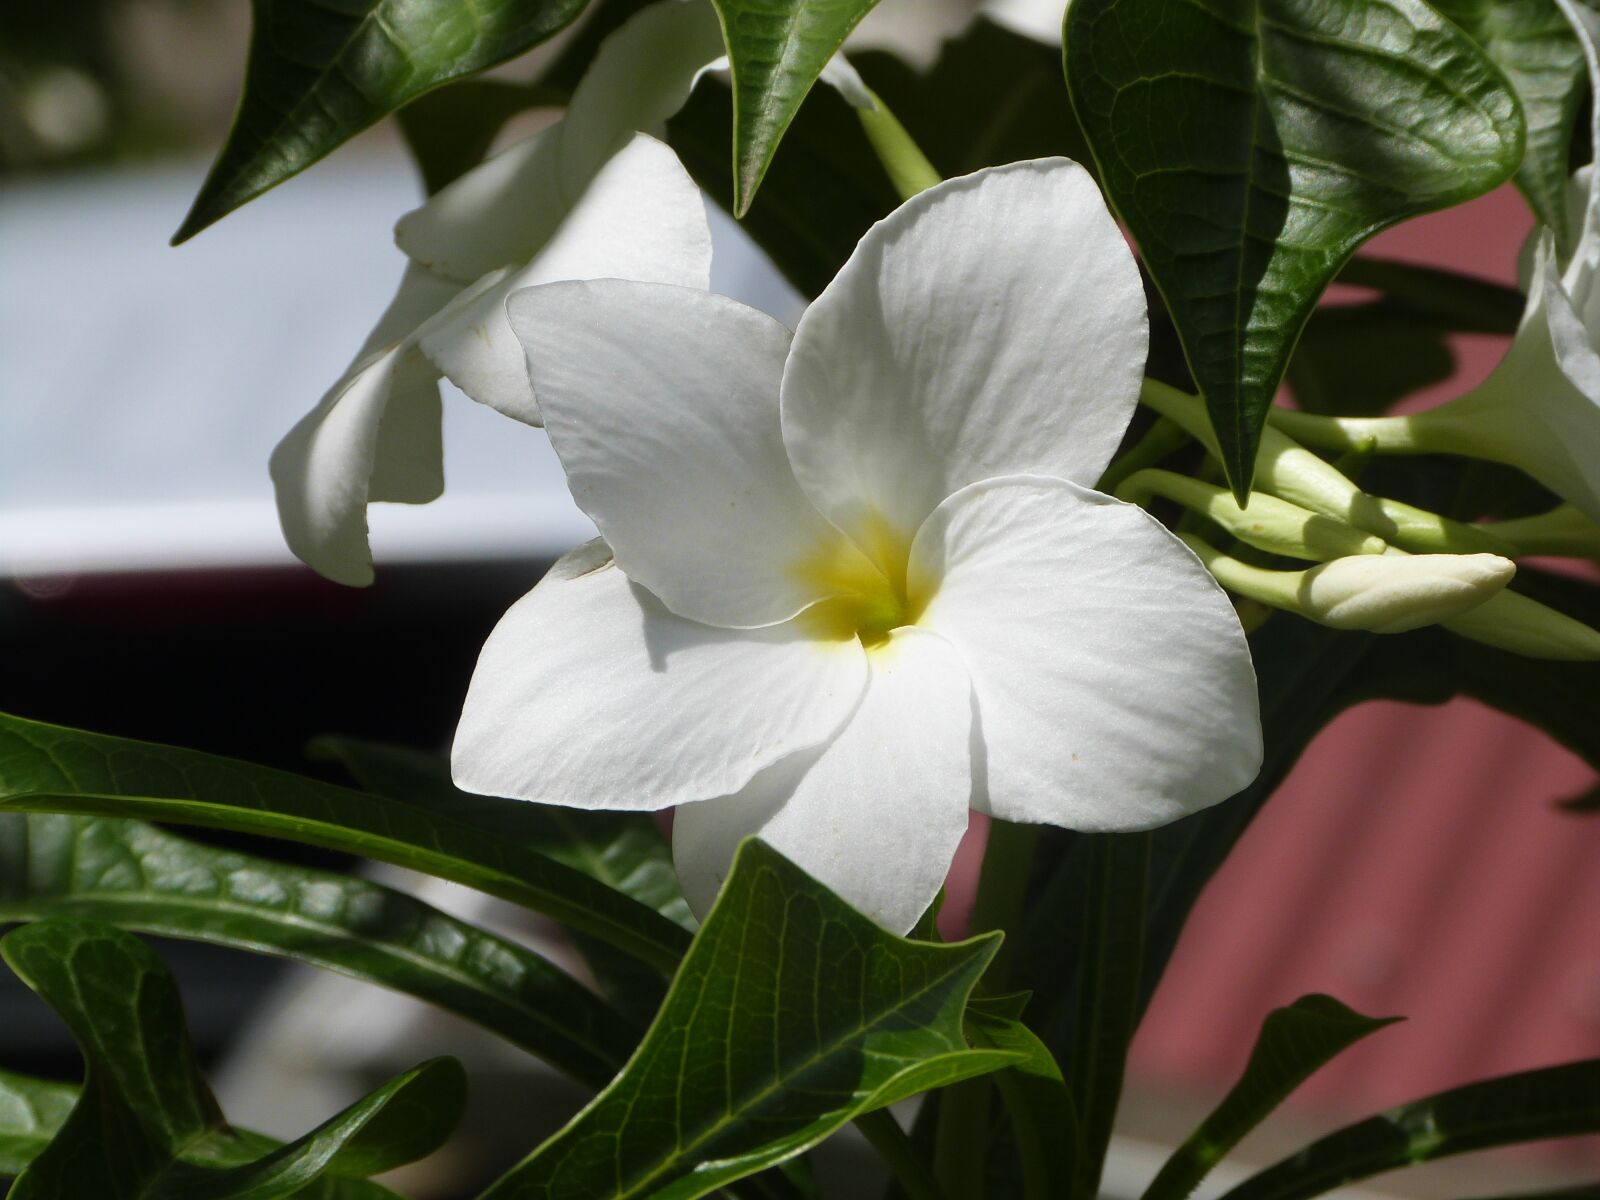 Panasonic Lumix DMC-FZ47 (Lumix DMC-FZ48) sample photo. Flower, white flower, amaryllis photography